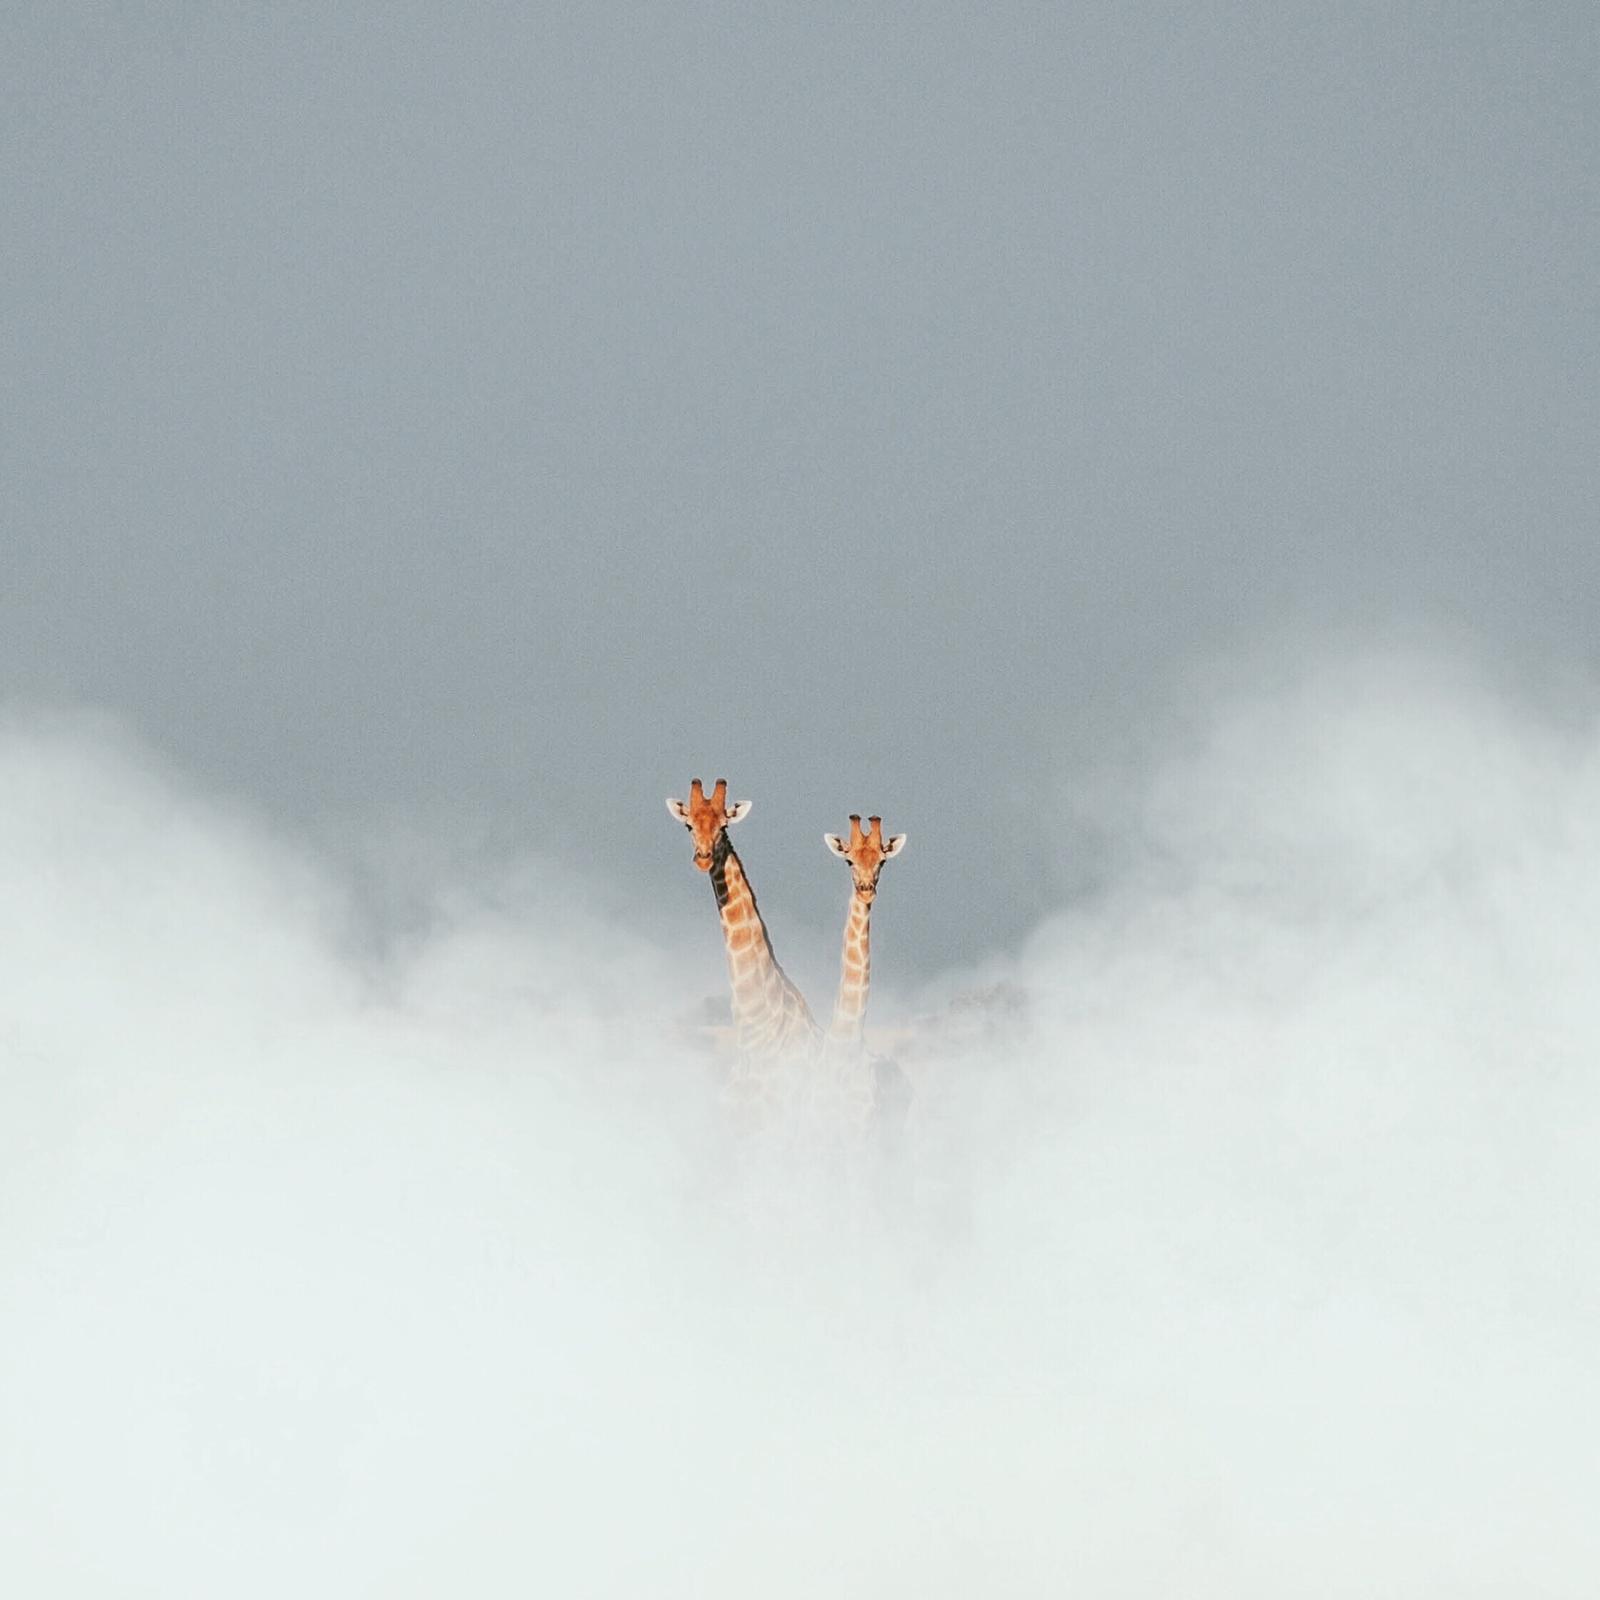 Bagatelle Lodge - Kalahari Game Ranch - Namibia - Giraffes peaking through clouds